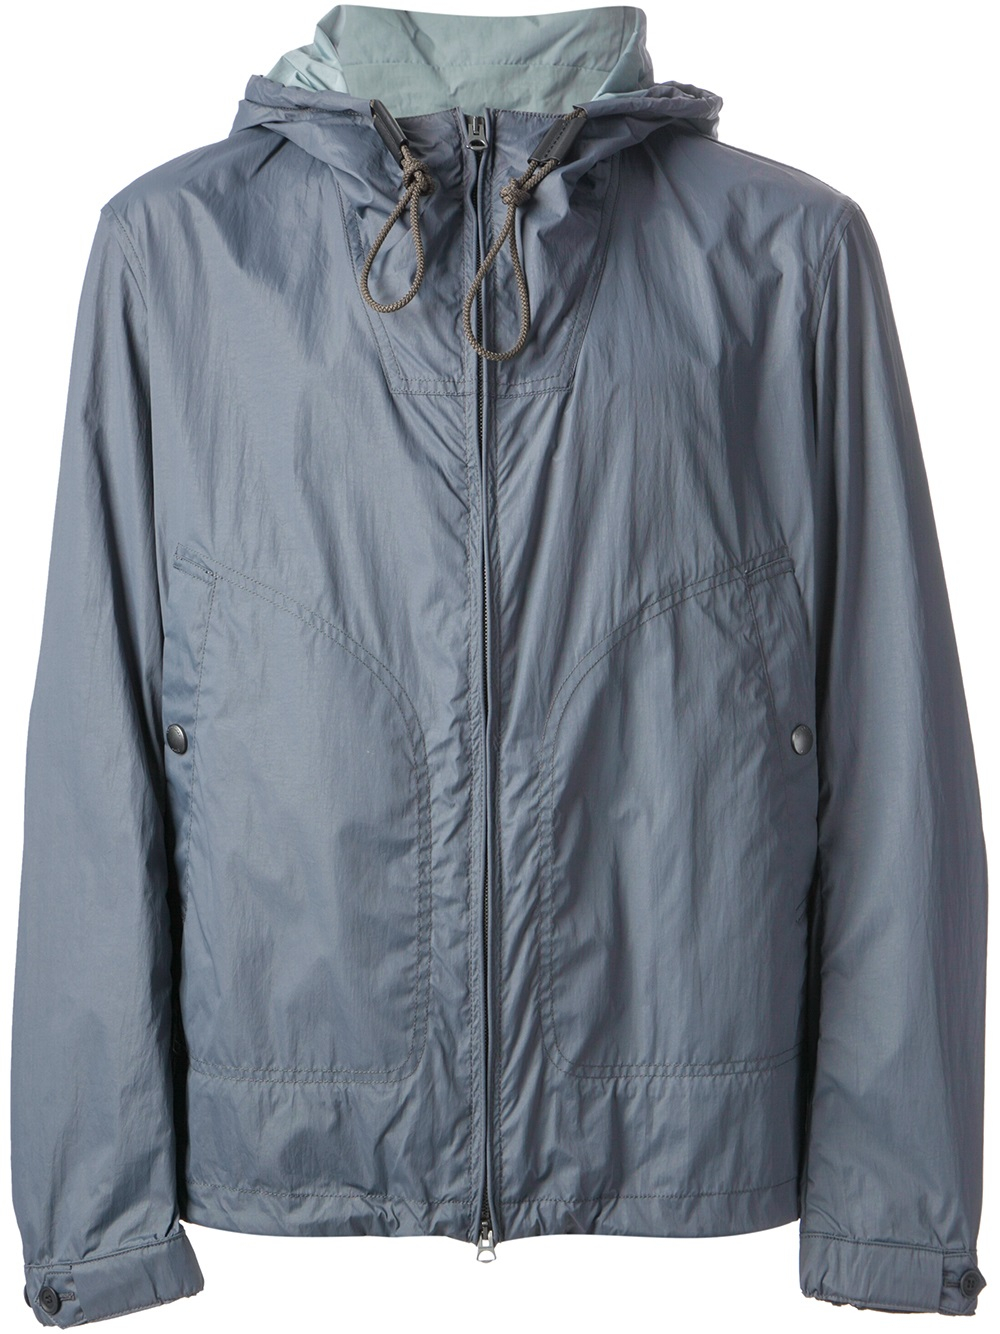 Lyst - Burberry Brit Wind Breaker Jacket in Gray for Men